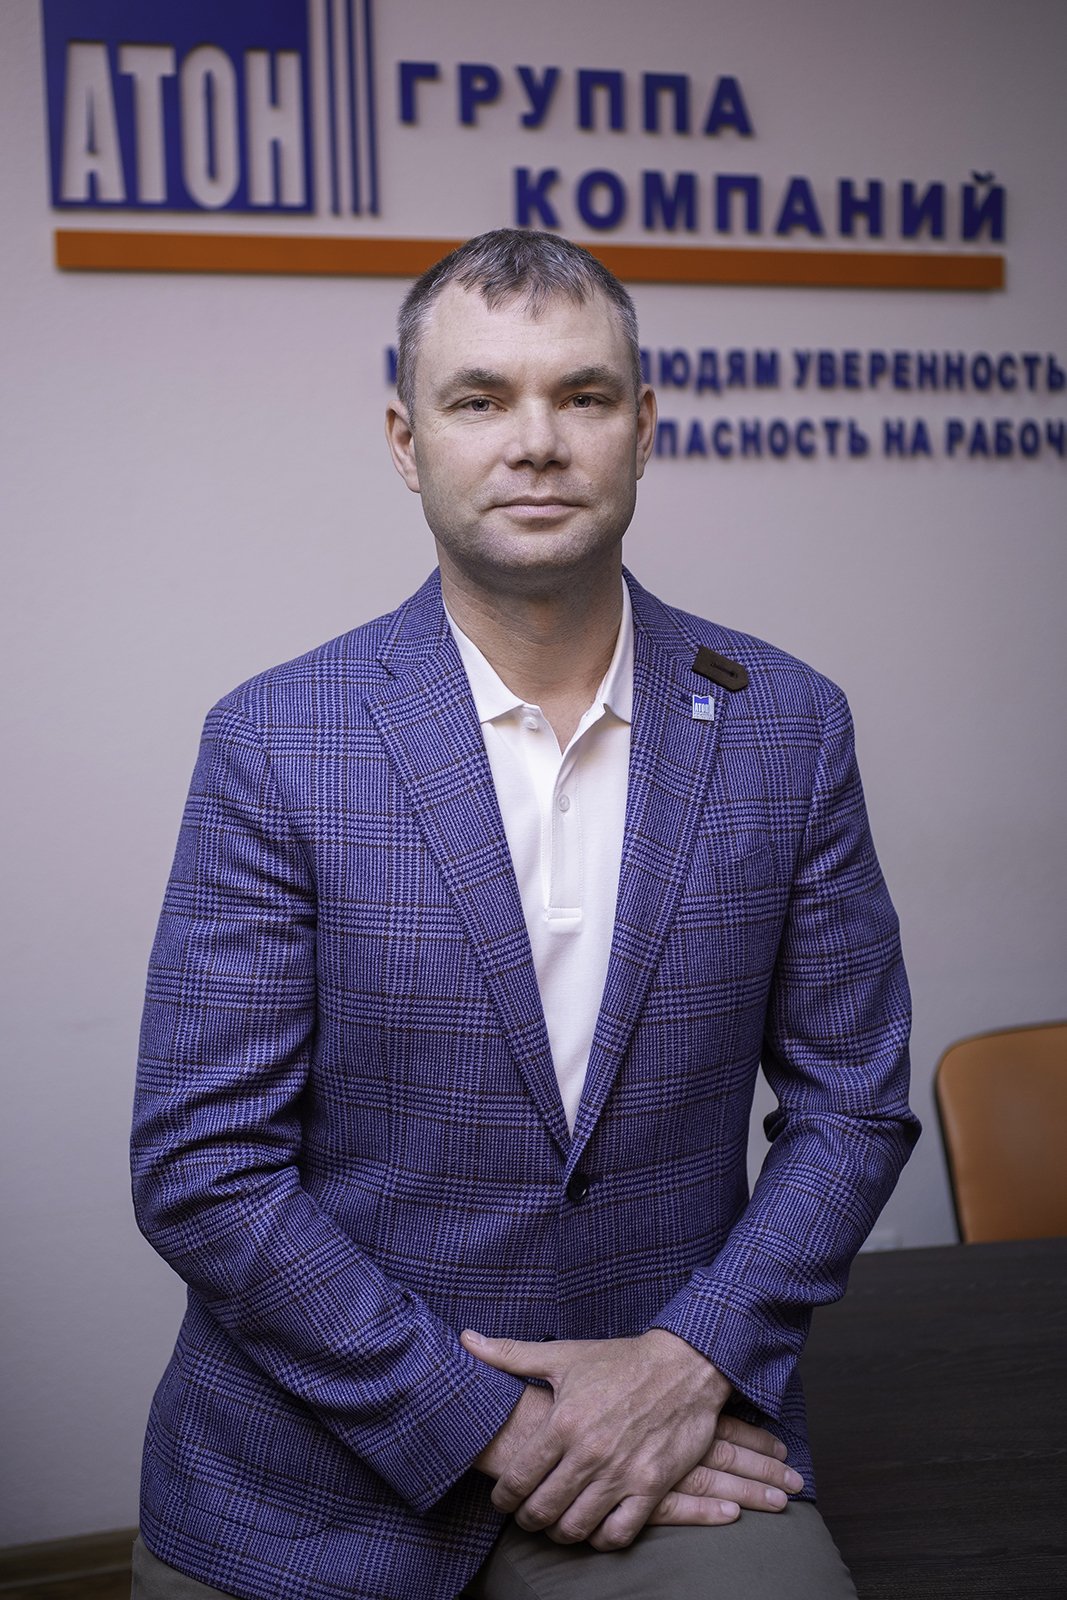 Генеральный директор Группы Компаний «Атон» г. Новосибирск